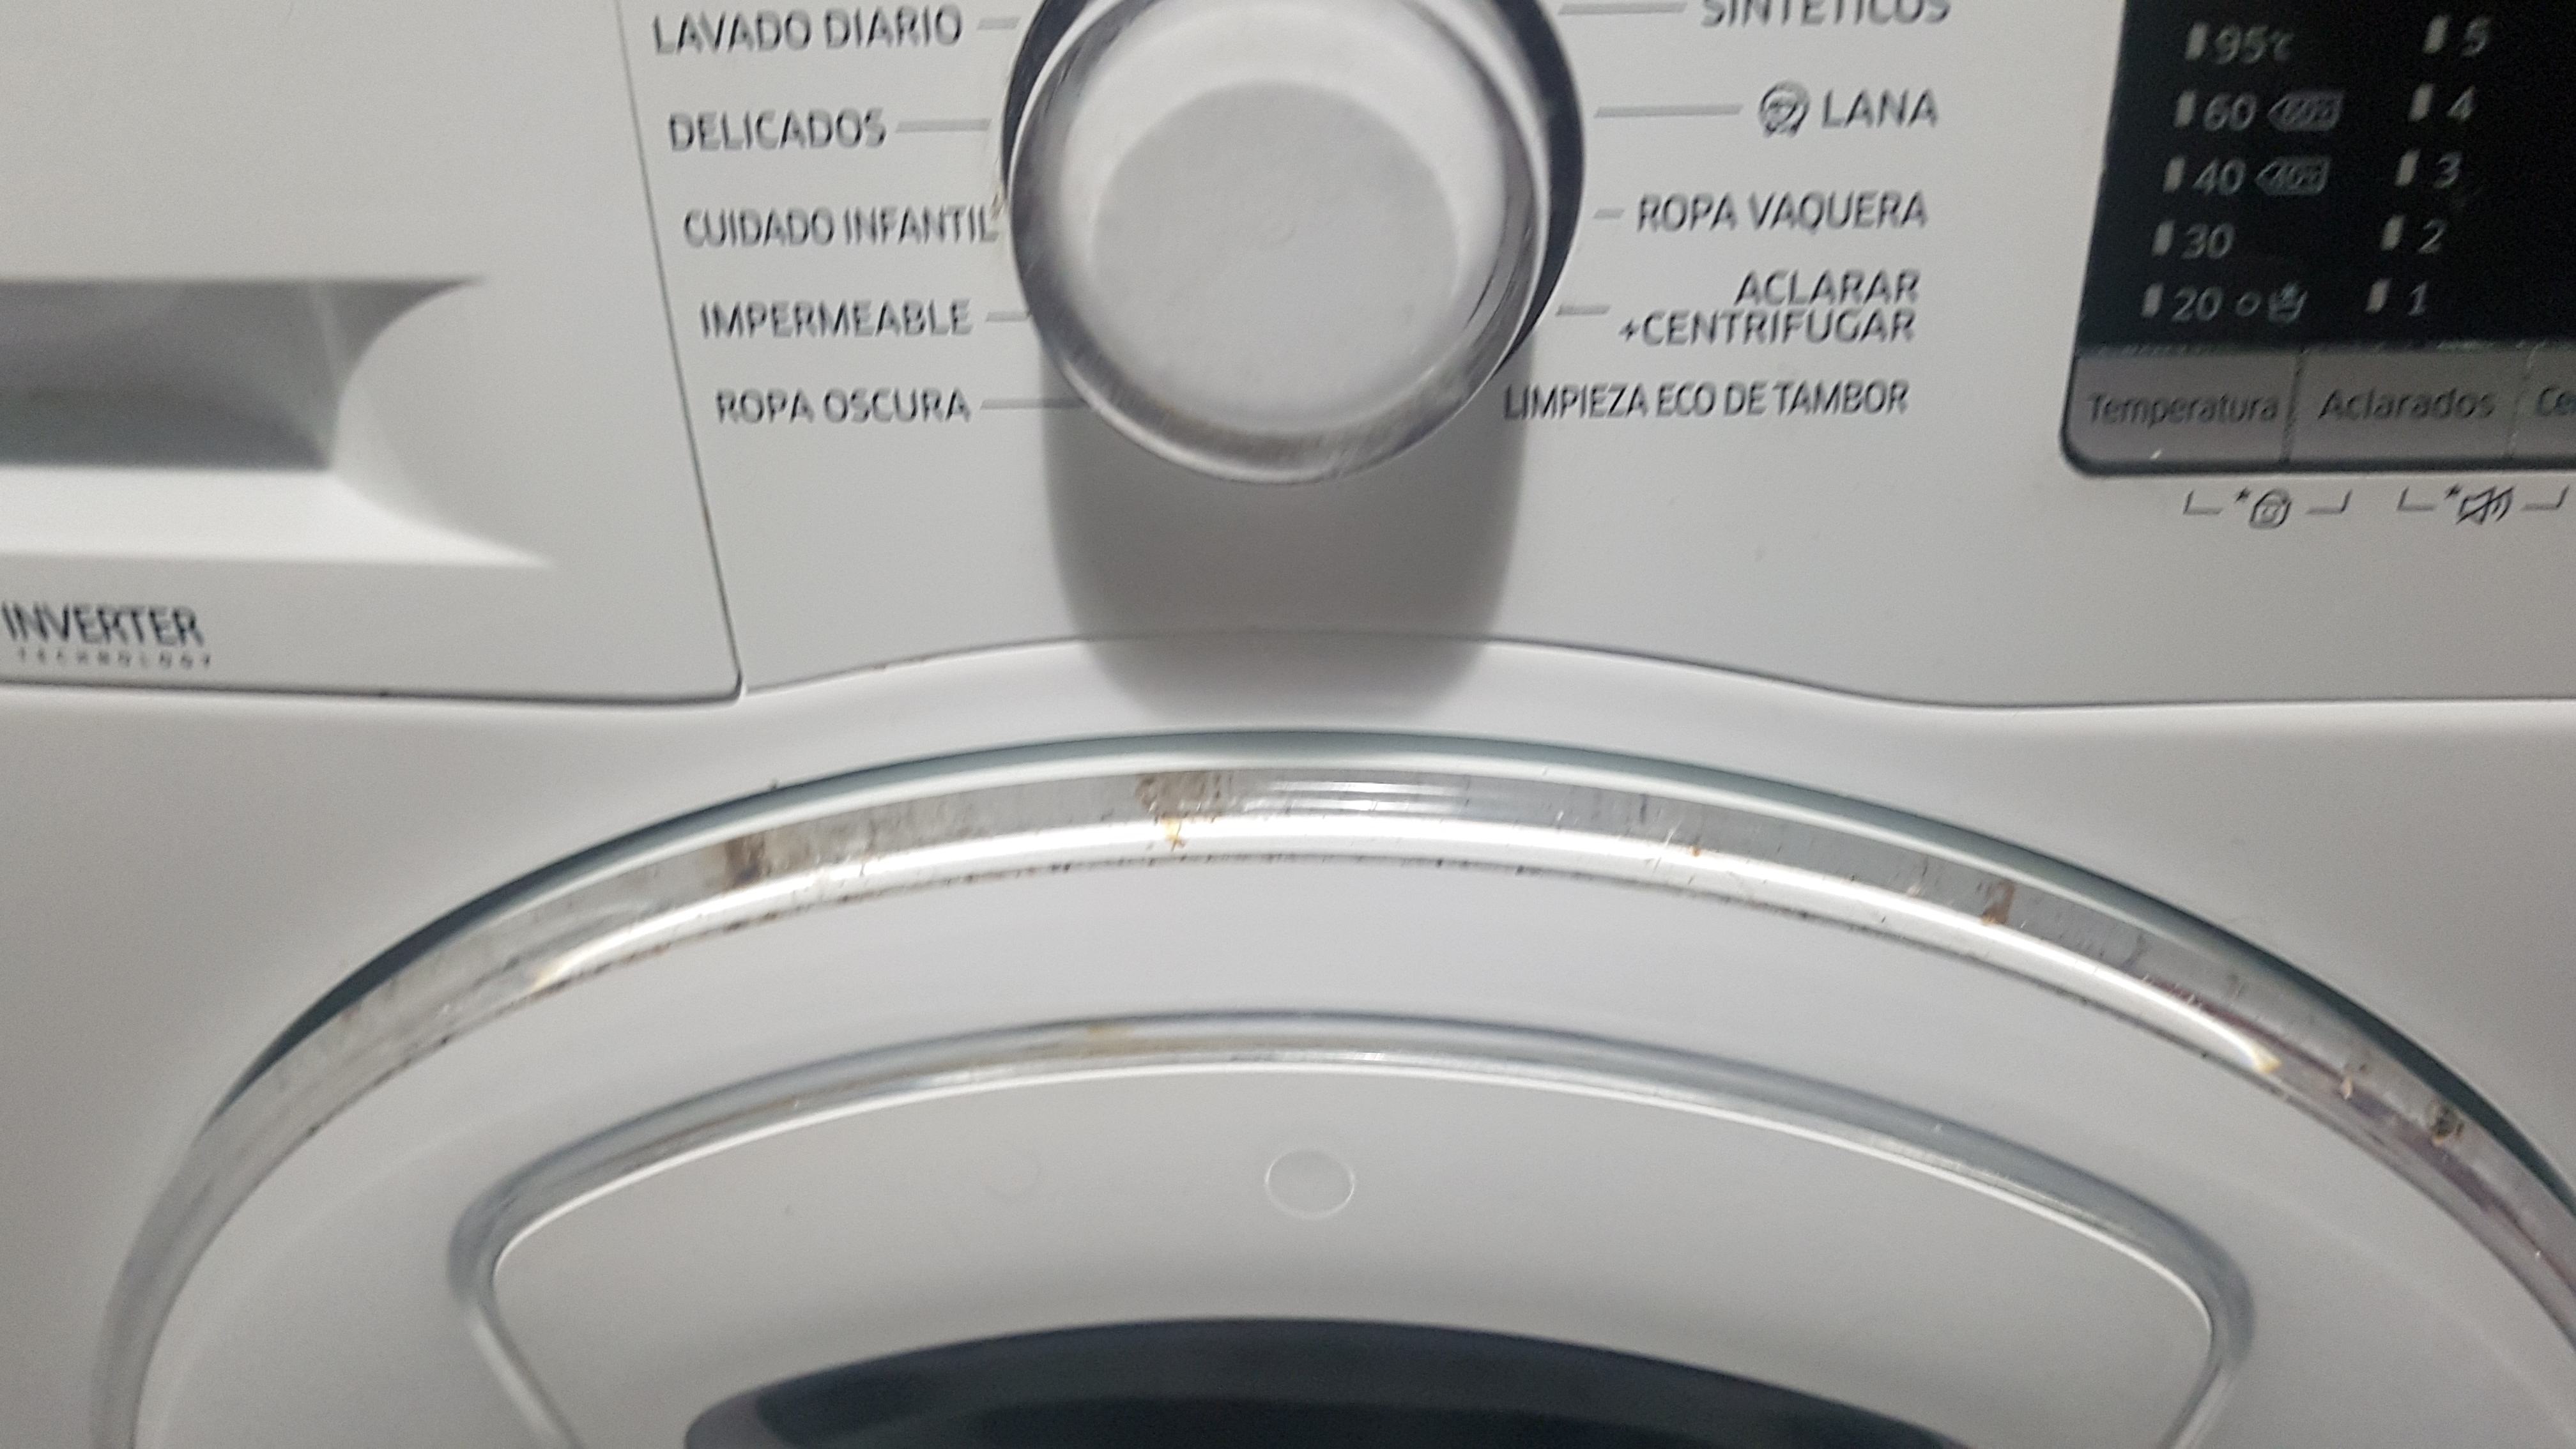 Solucionado: Limpieza embellecedor lavadora samsung - Samsung Community